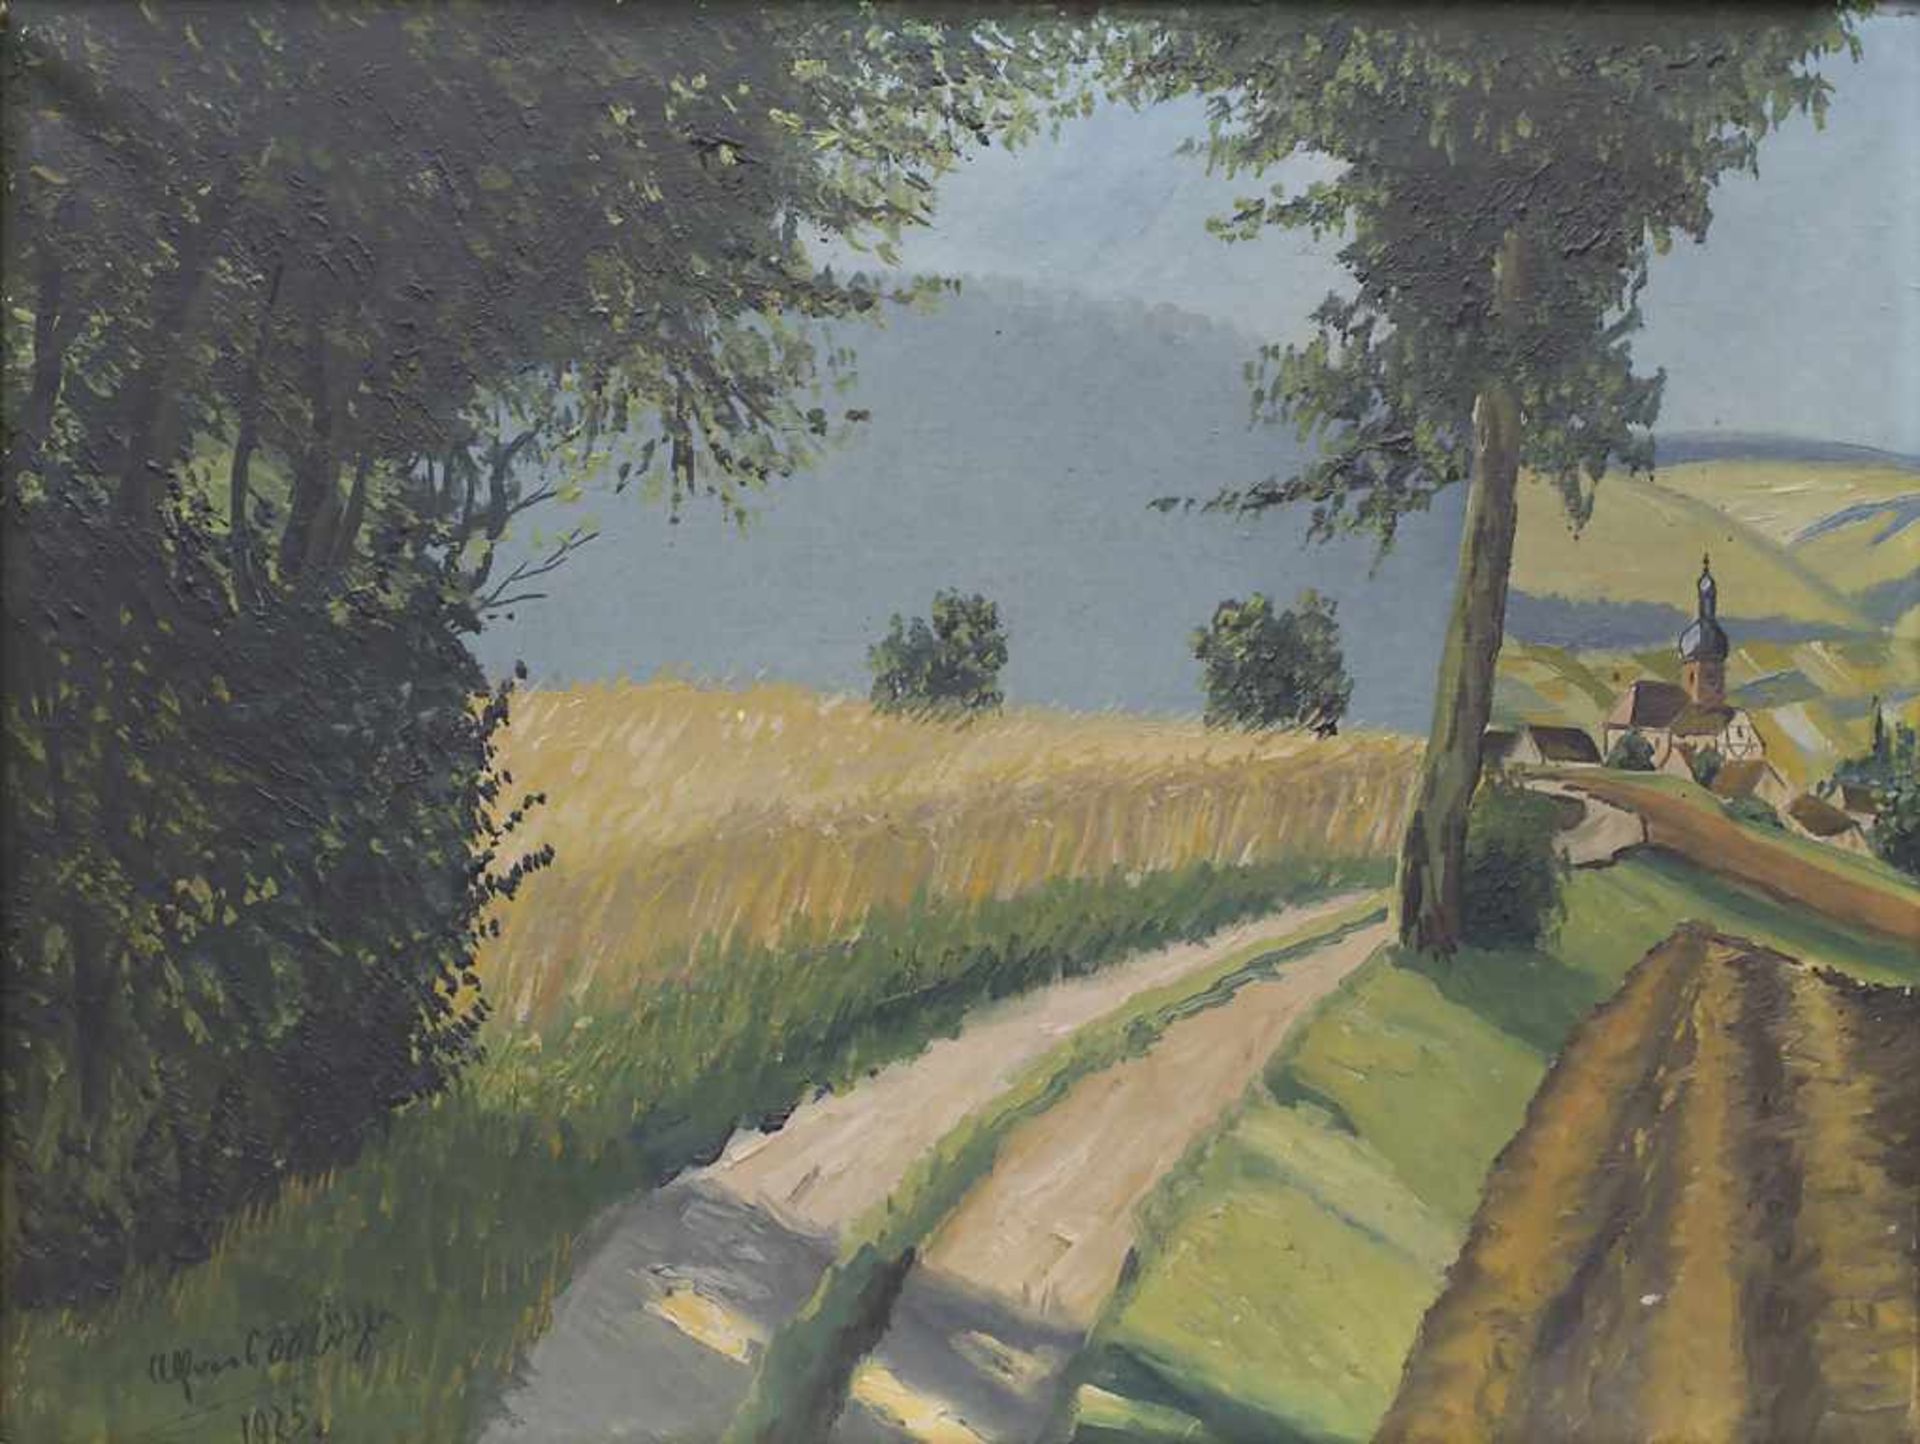 Alfred Mühls (tätig um 1925), 'Landschaft mit Weizenfeld und Dorf' / 'A landscape with a wheat field